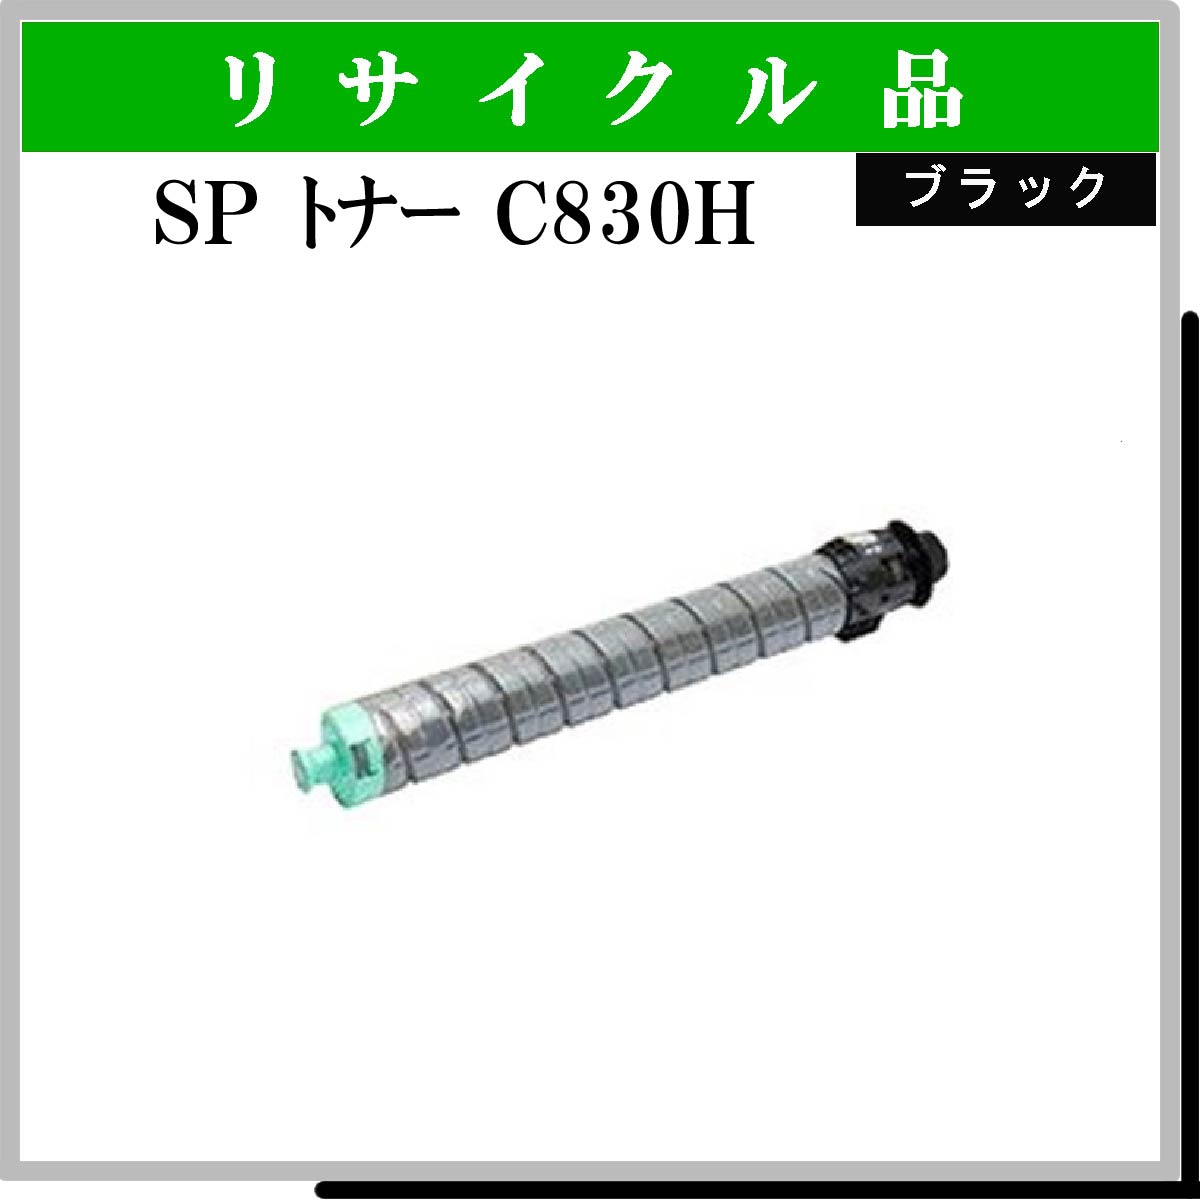 SP ﾄﾅｰ C830H ﾌﾞﾗｯｸ